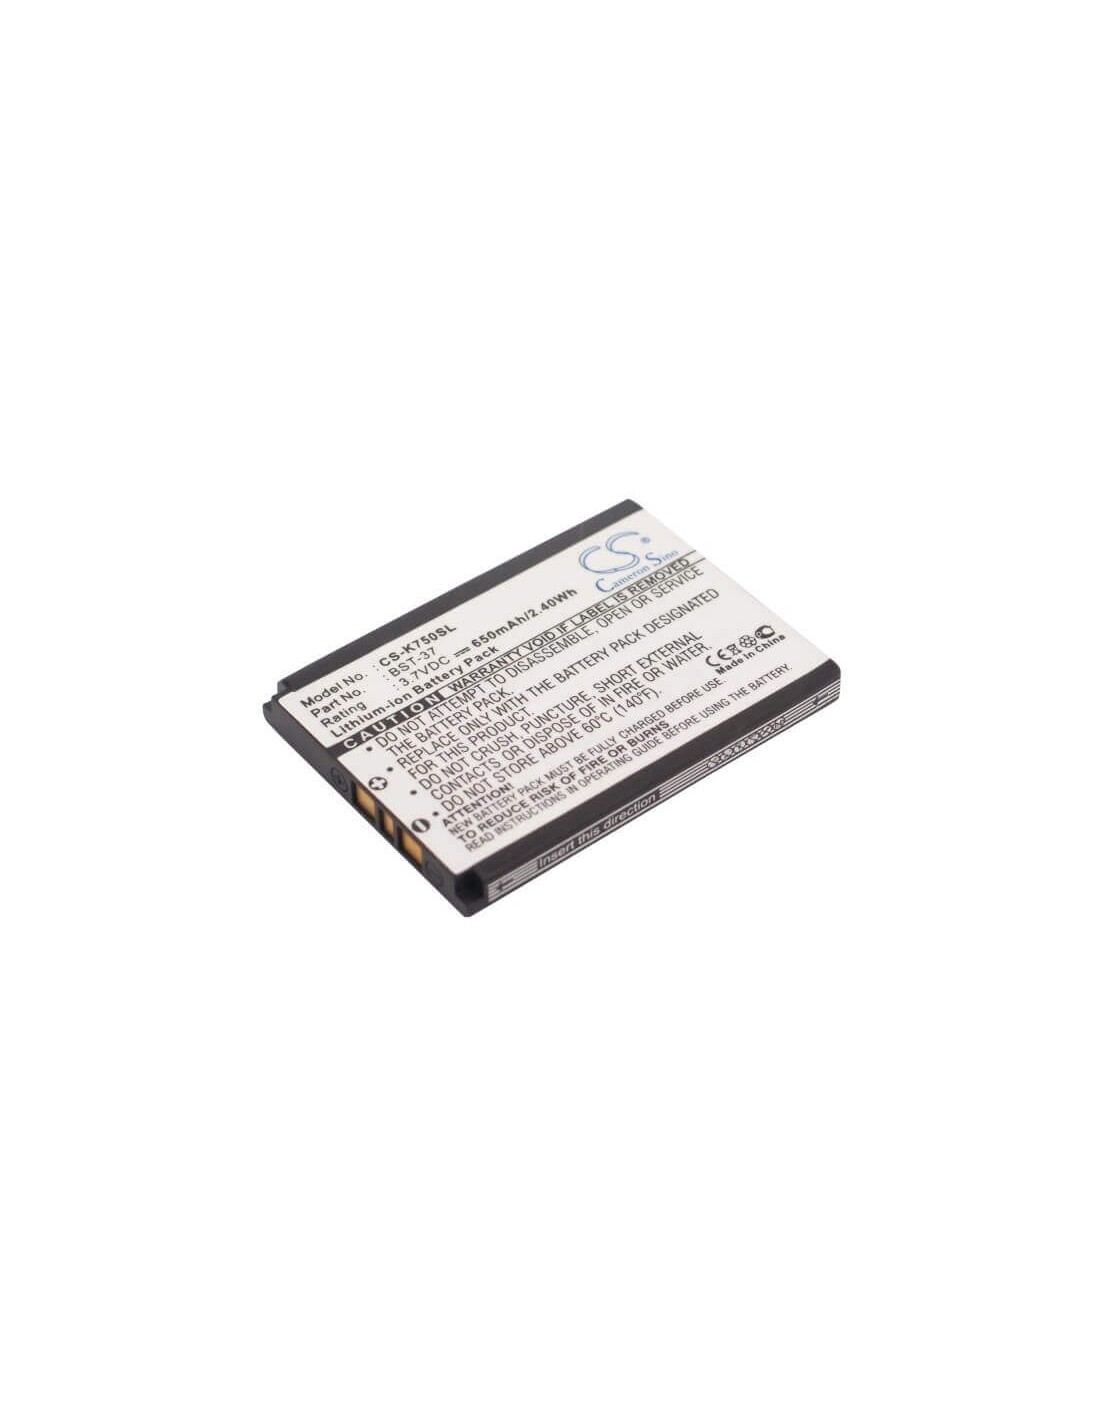 Battery for Sony Ericsson K750, D750, D750i 3.7V, 650mAh - 2.41Wh